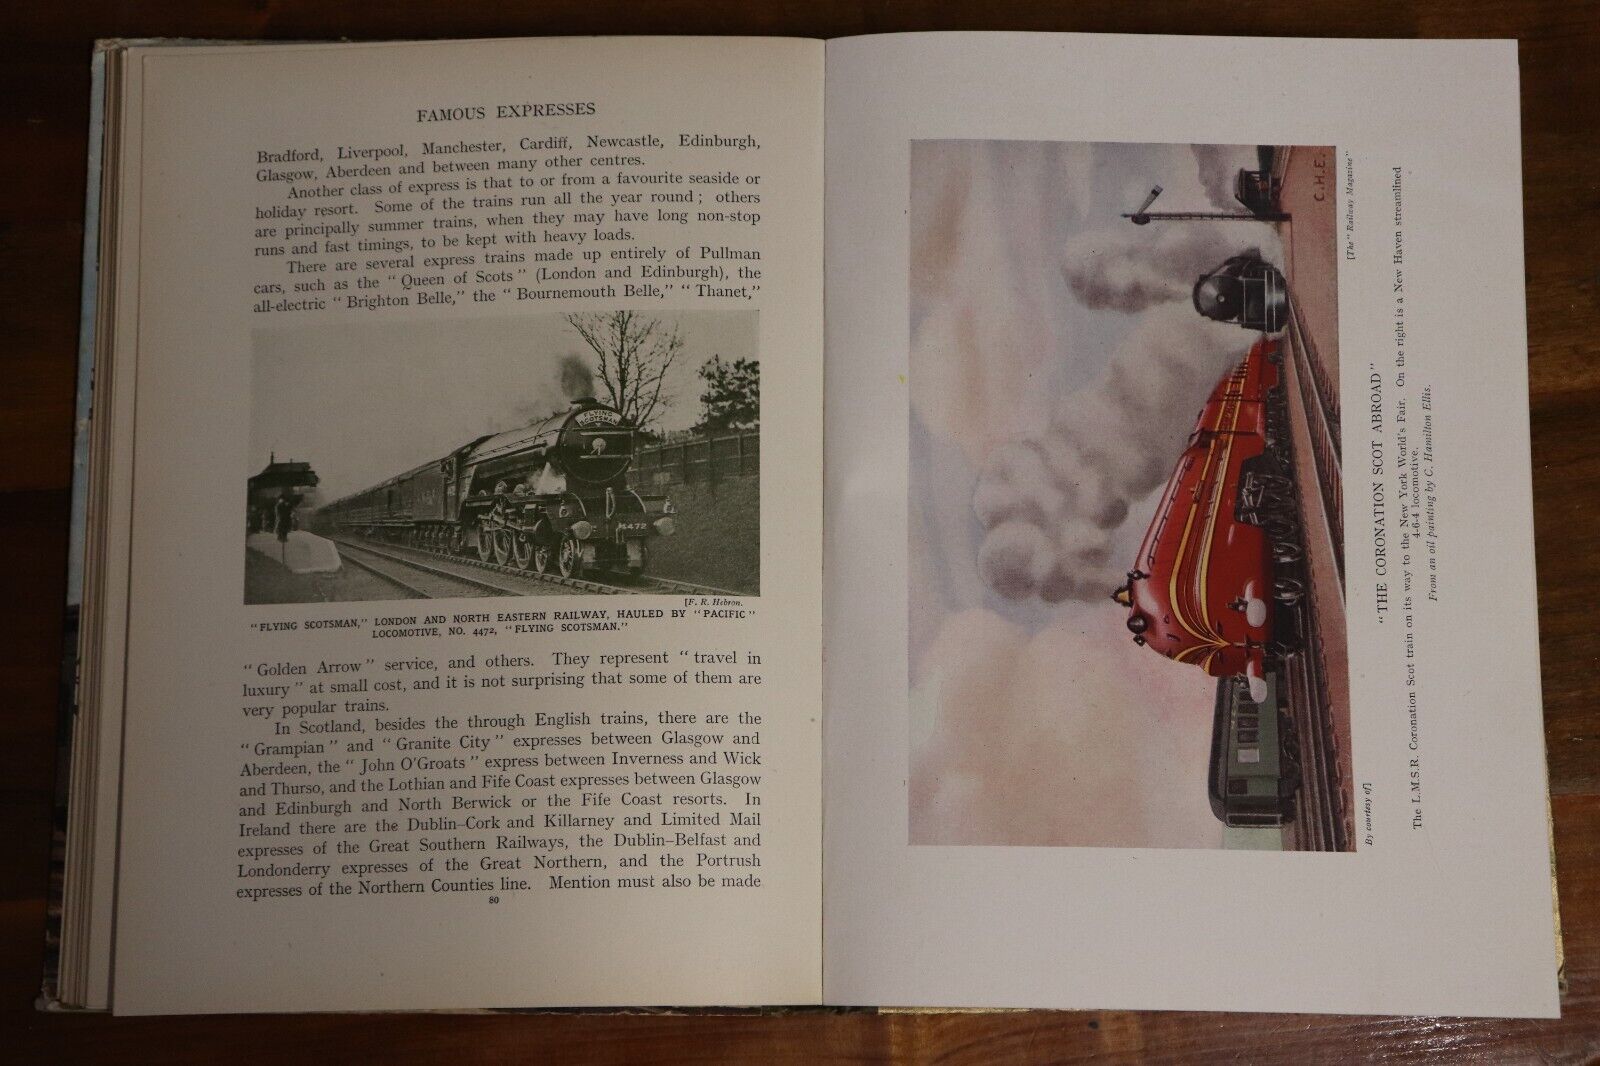 The Wonder Book Of Railways - c1940 - Antique Childrens Book